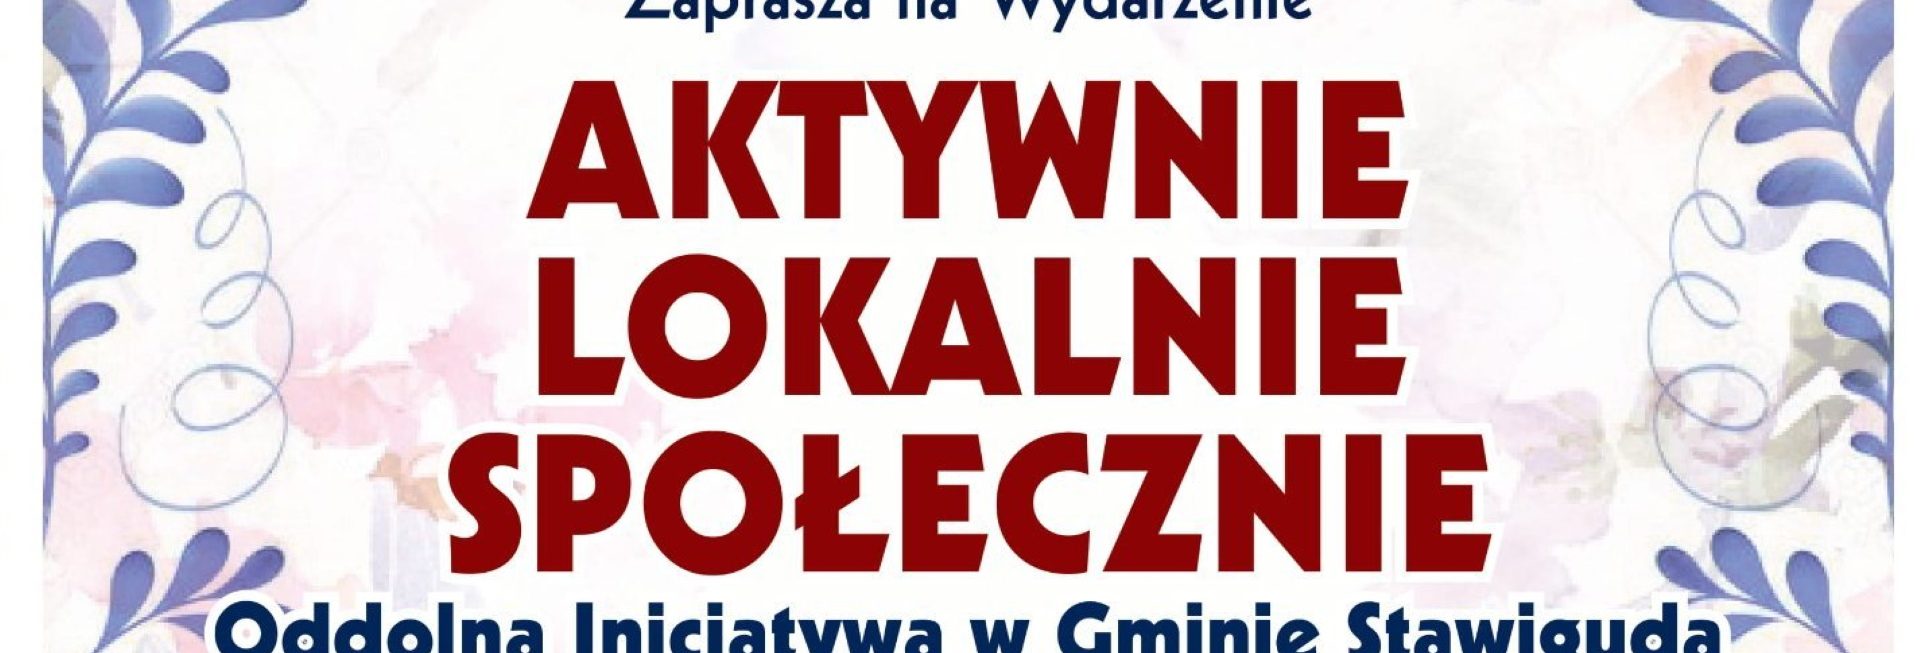 Plakat graficzny zapraszający na wydarzenie "Aktywnie Lokalnie Społecznie" - Stawiguda 2022.